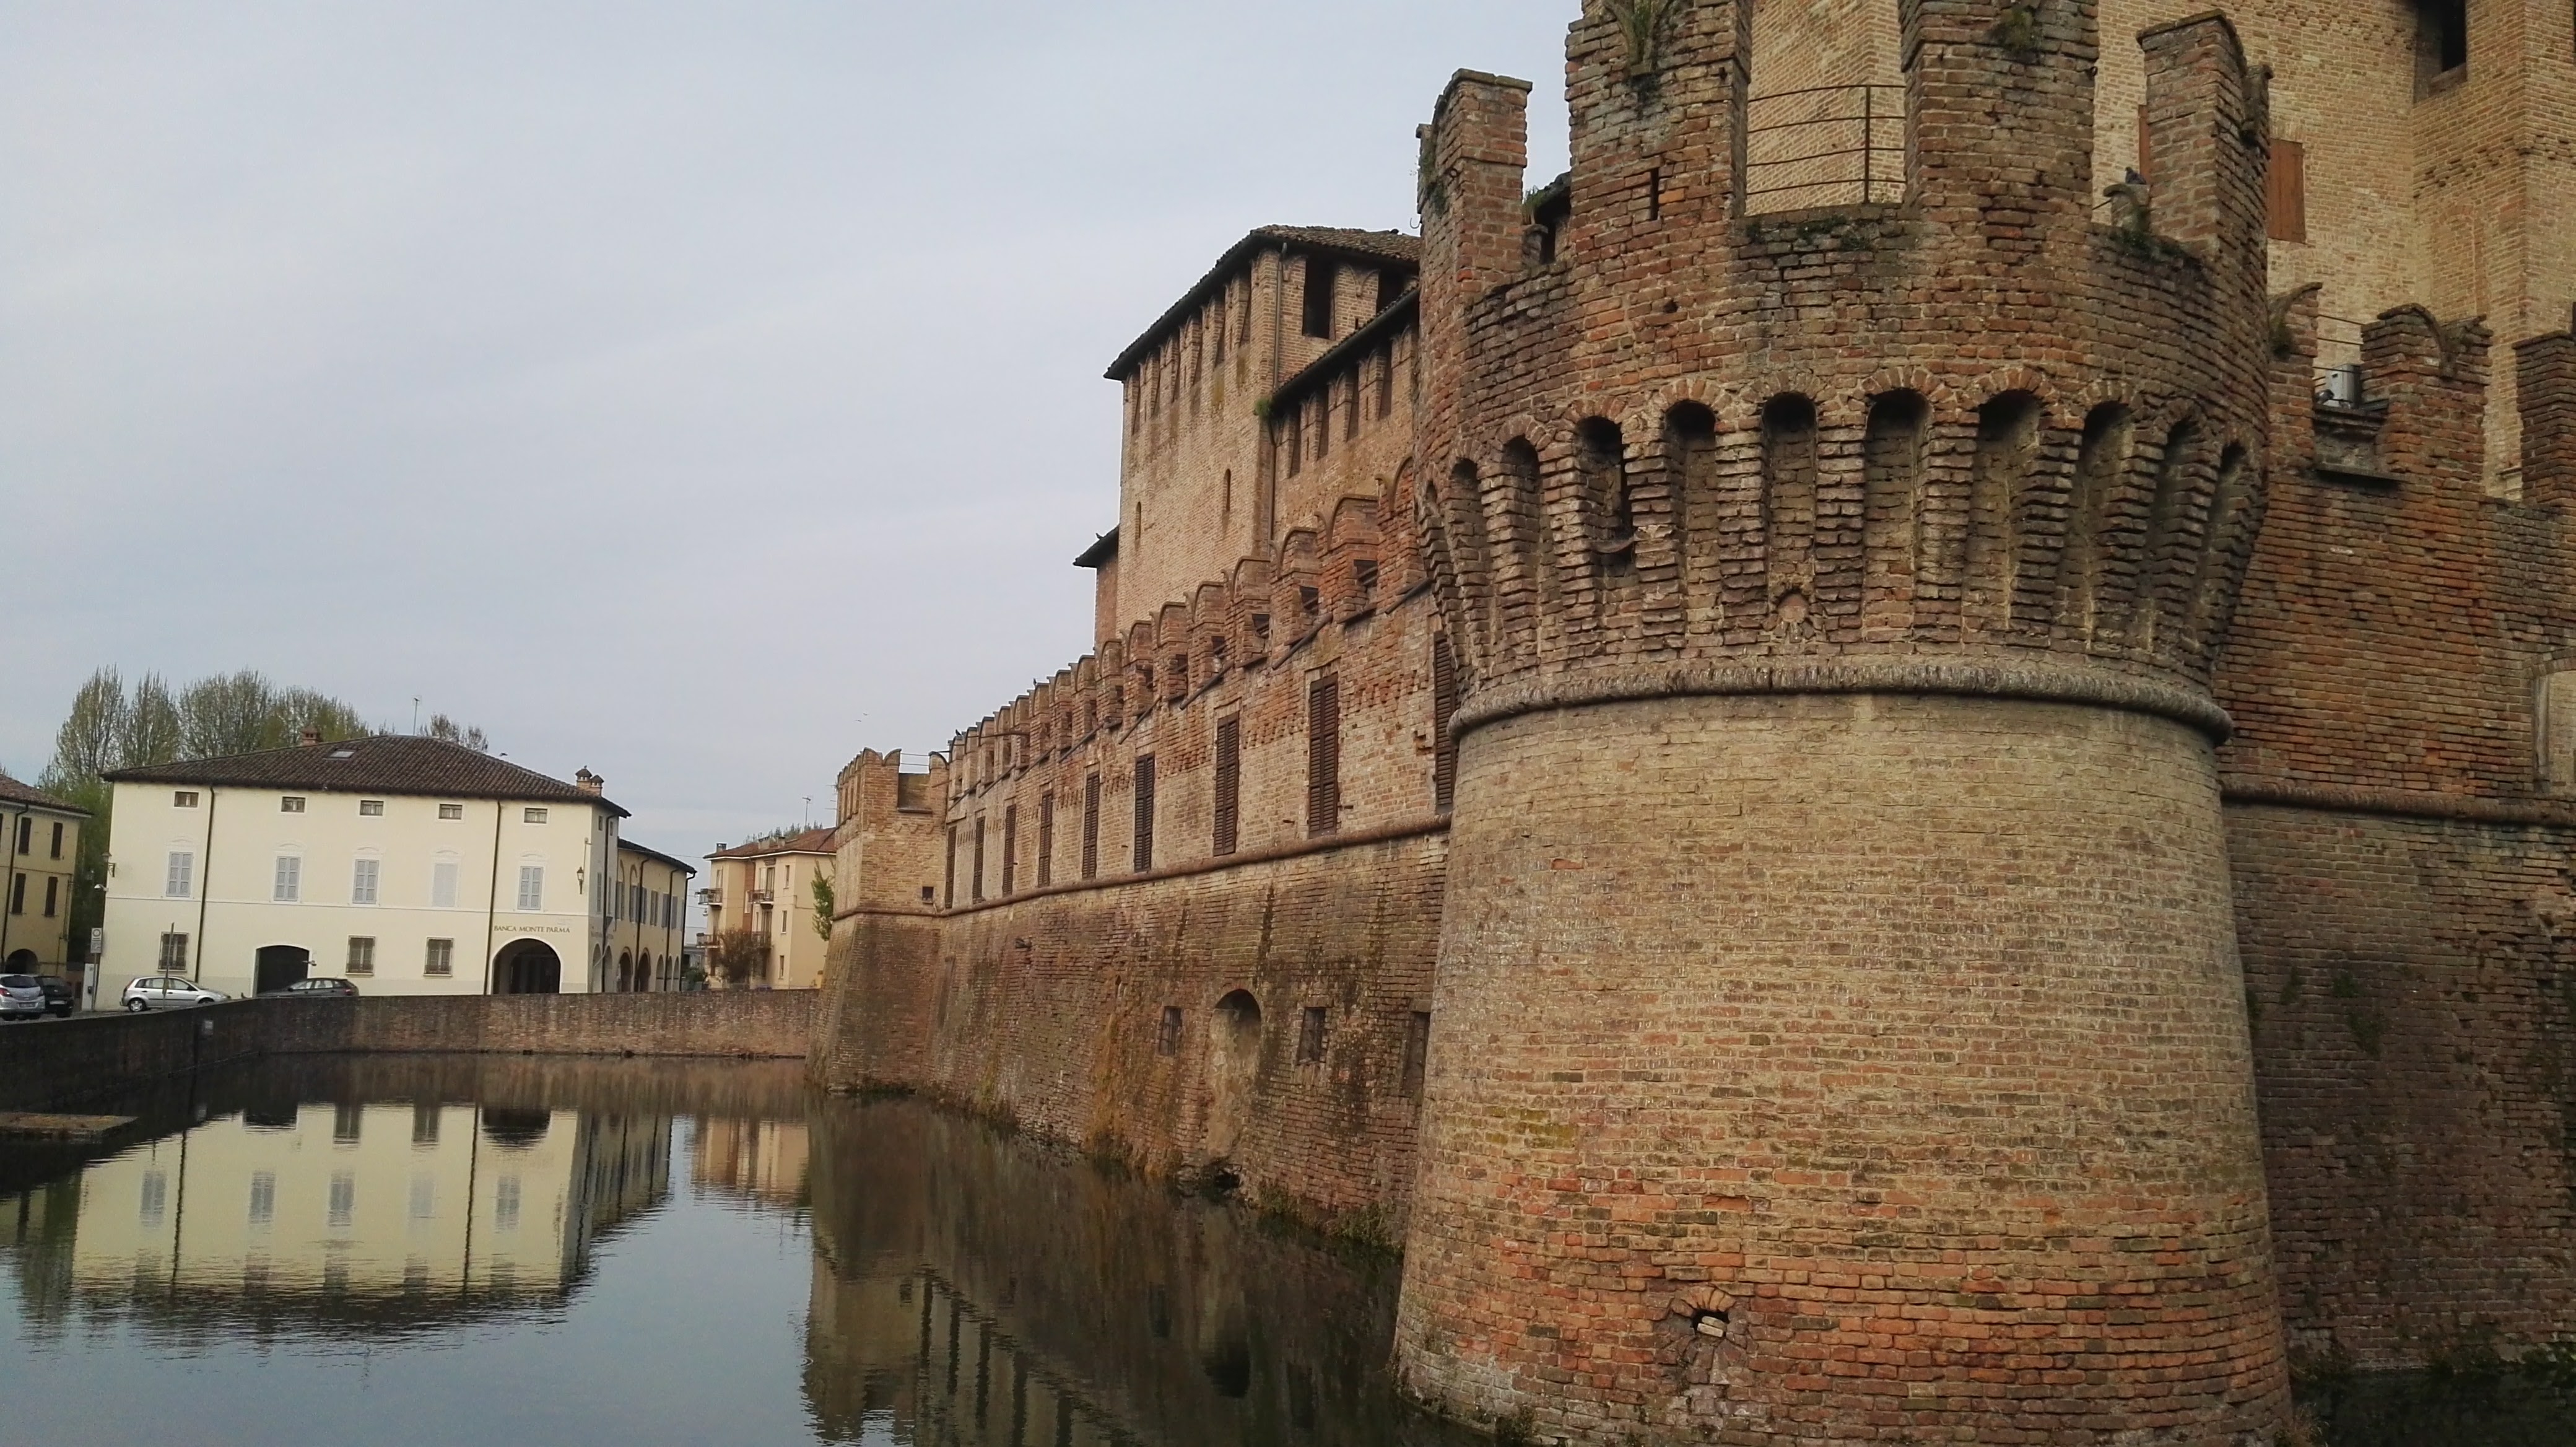 San Vitale Fortress in Emilia Romagna